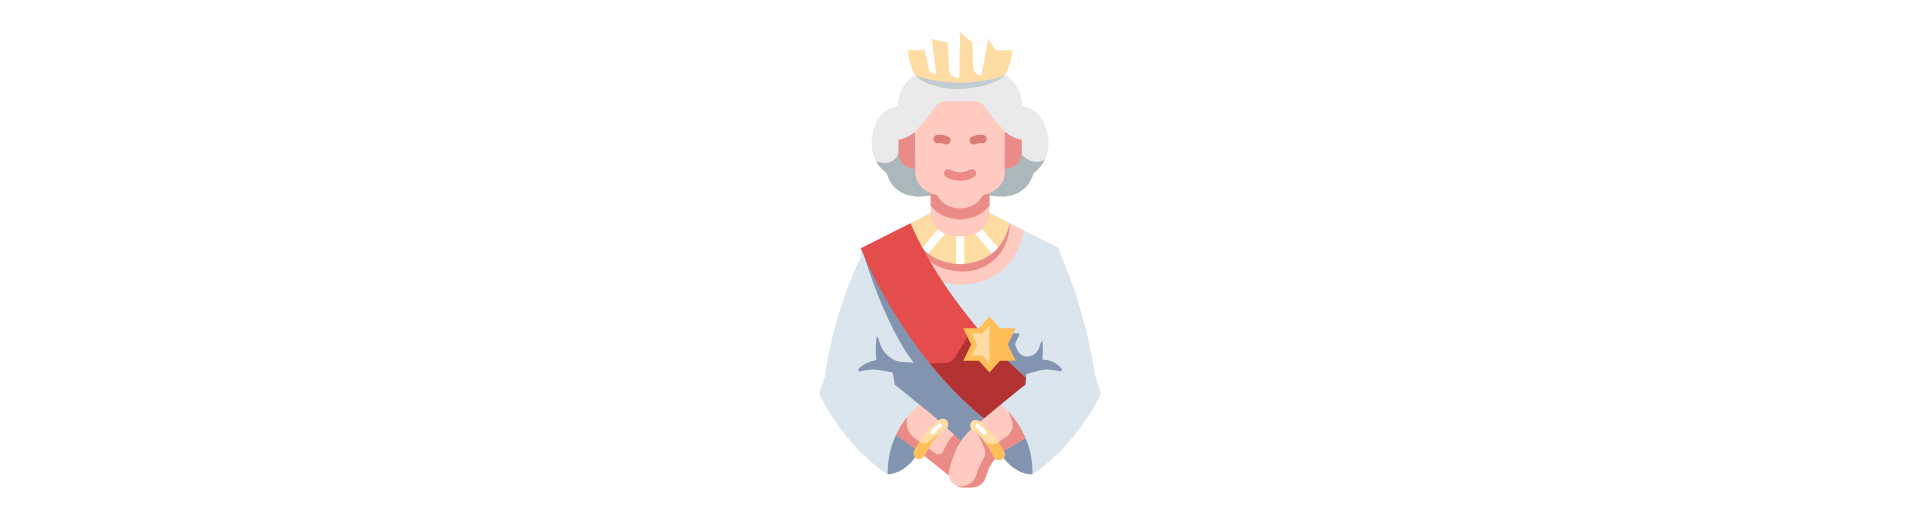 Cartoon Picture of Her Majesty Queen Eliazbeth II